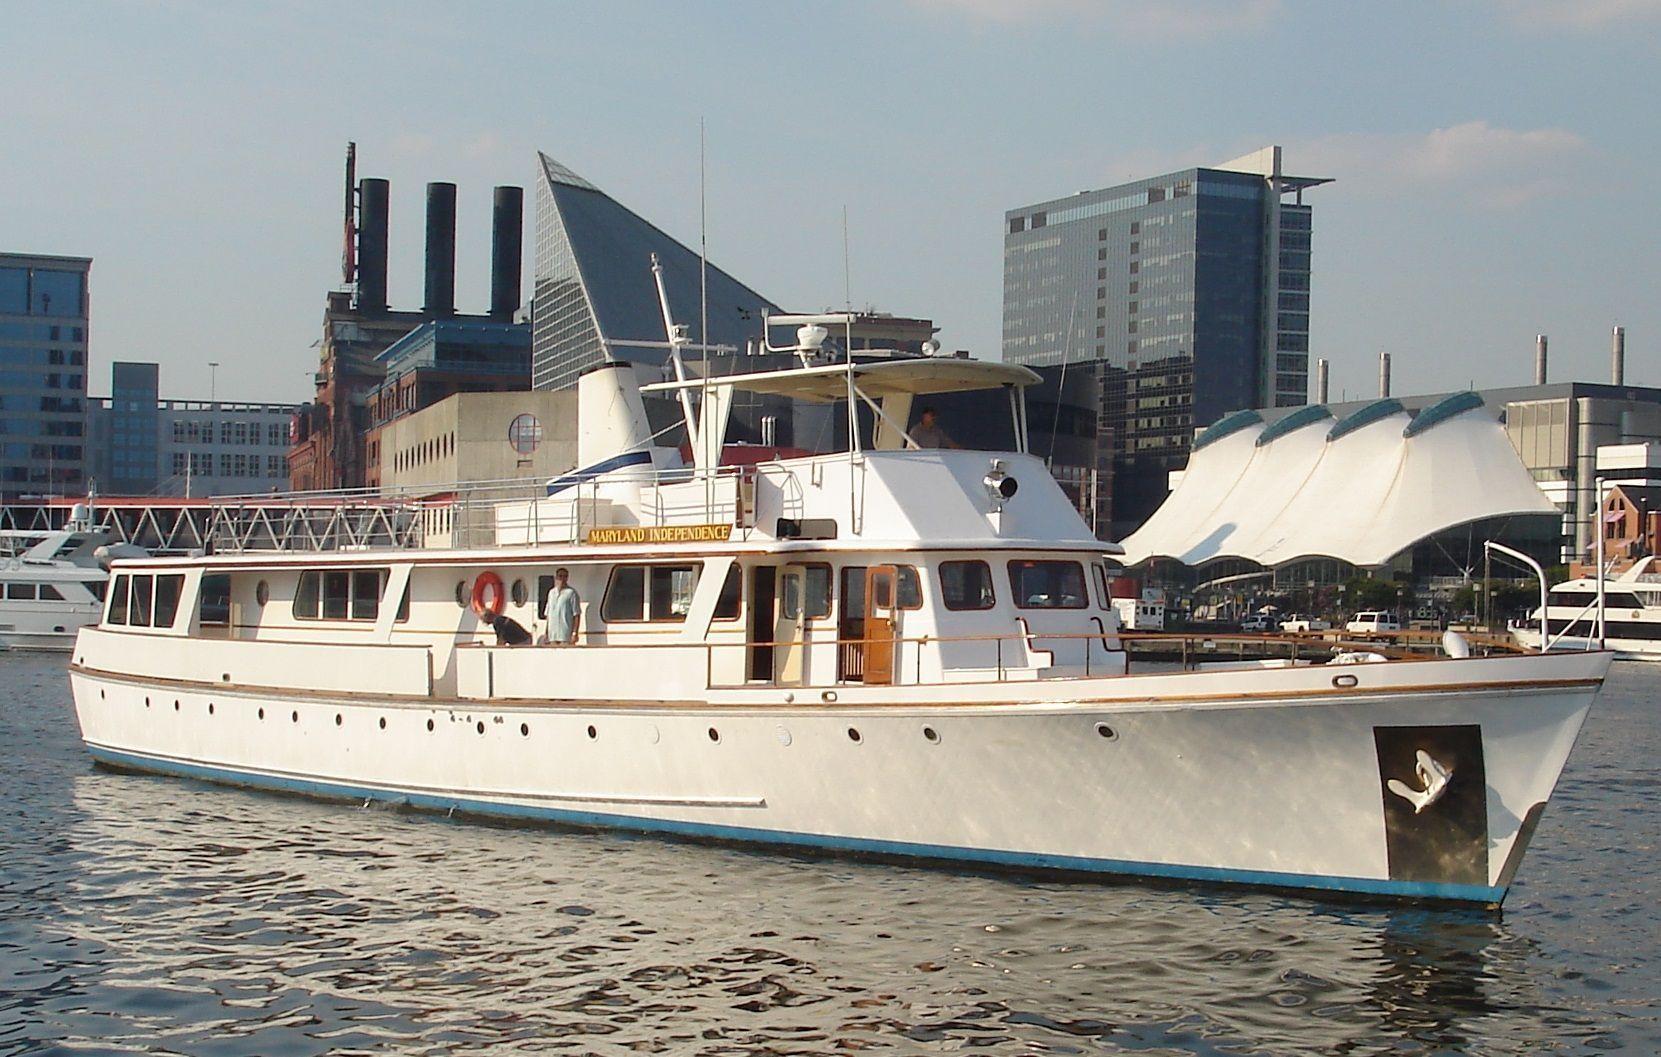 Fairmile - LeBlanc Shipyards Pilot House Motor Yacht, Baltimore Inner Harbor